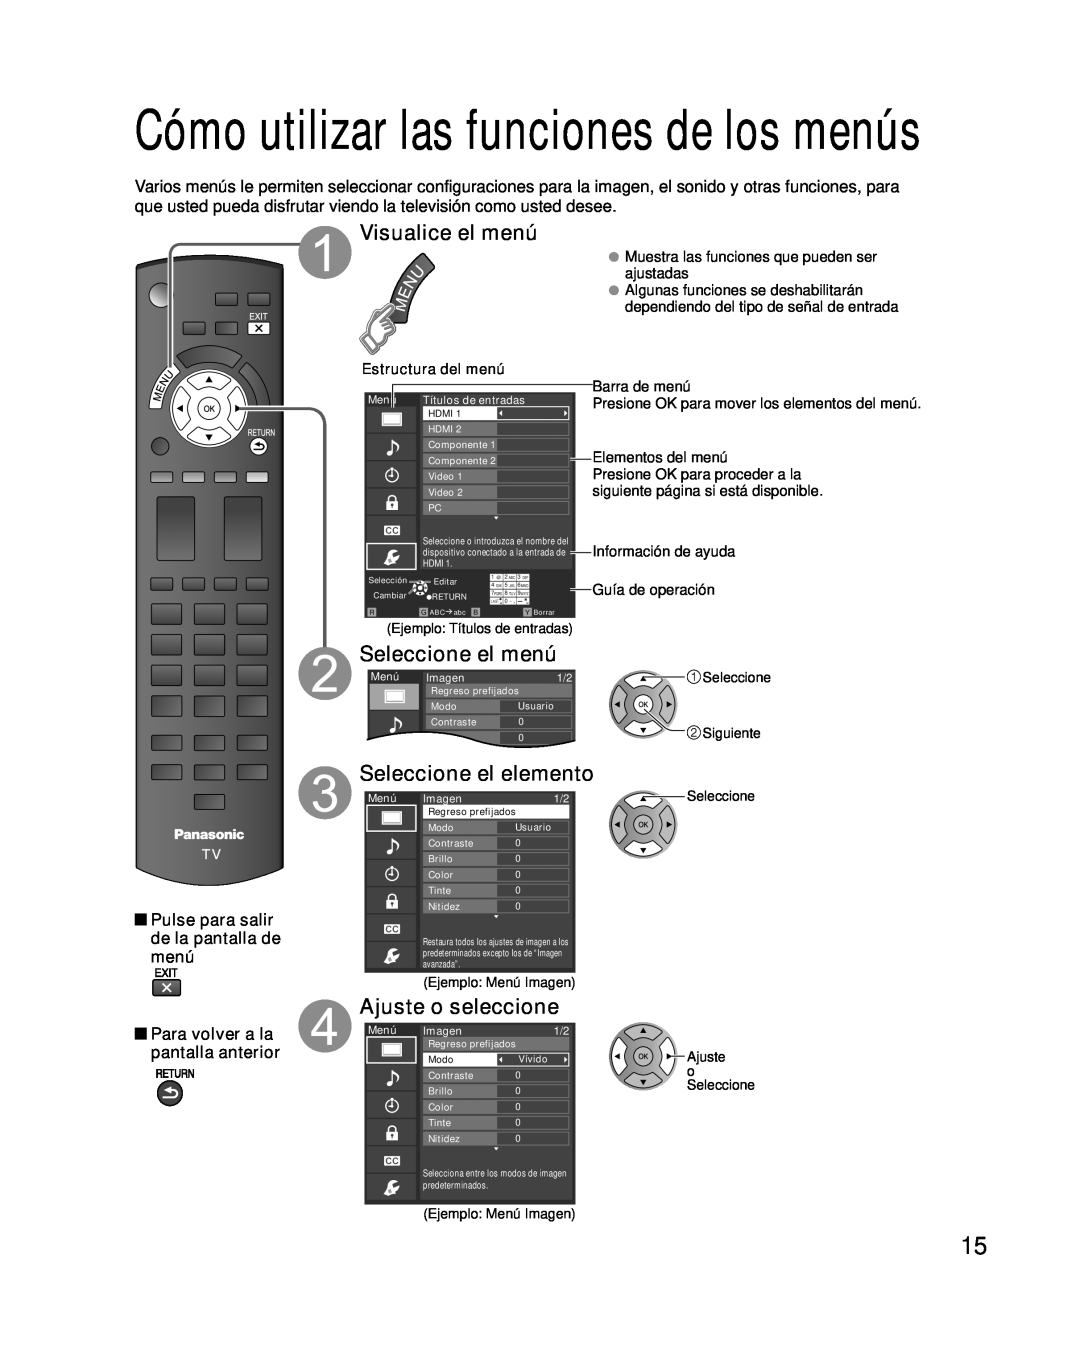 Panasonic TQB2AA0576 Cómo utilizar las funciones de los menús, Pulse para salir de la pantalla de menú, Guía de operación 